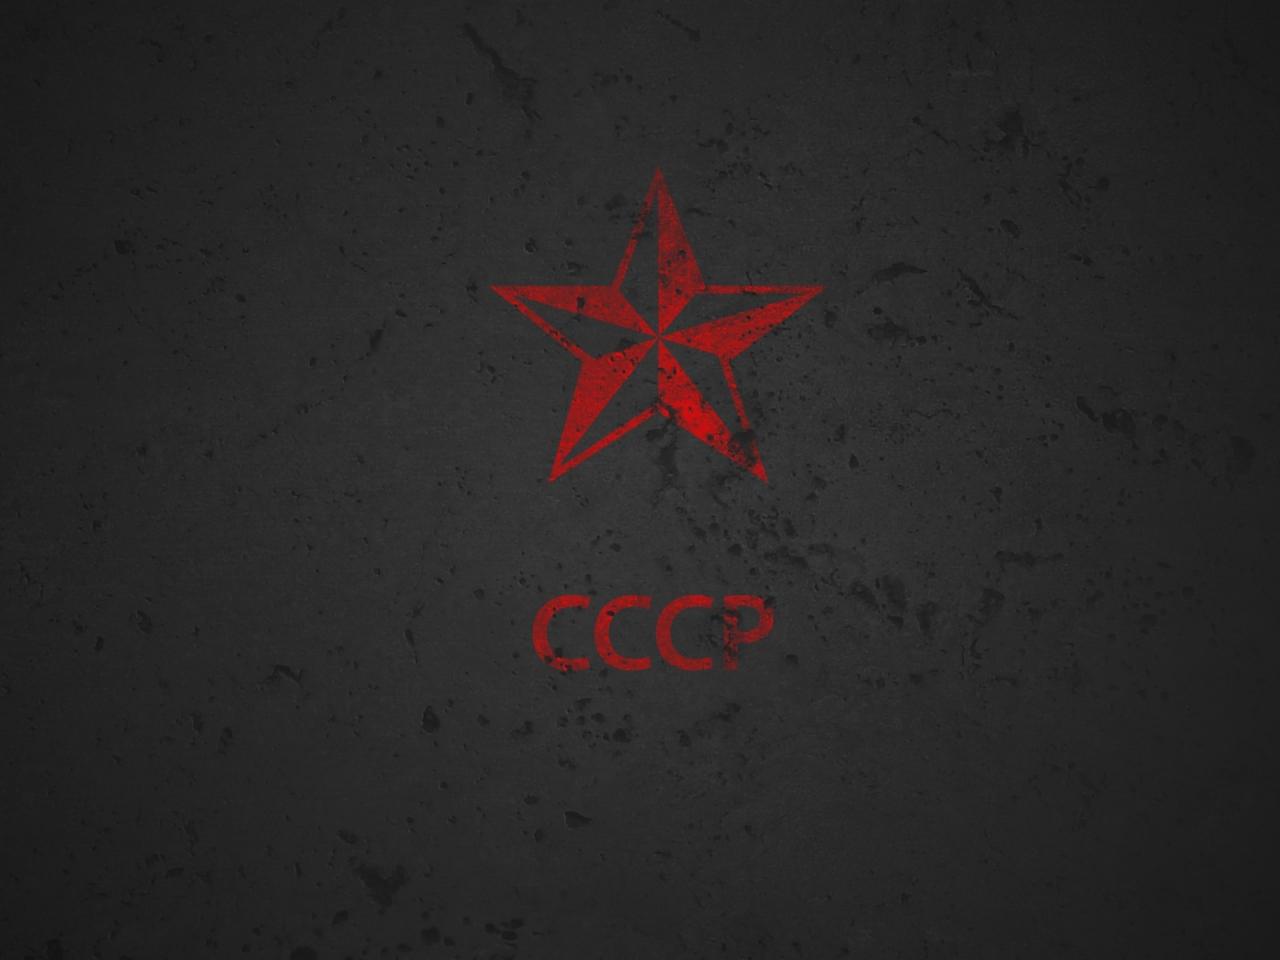 Обои для рабочего стола СССР и красная звезда фото - Раздел обоев:  Политические партии (Логотипы)